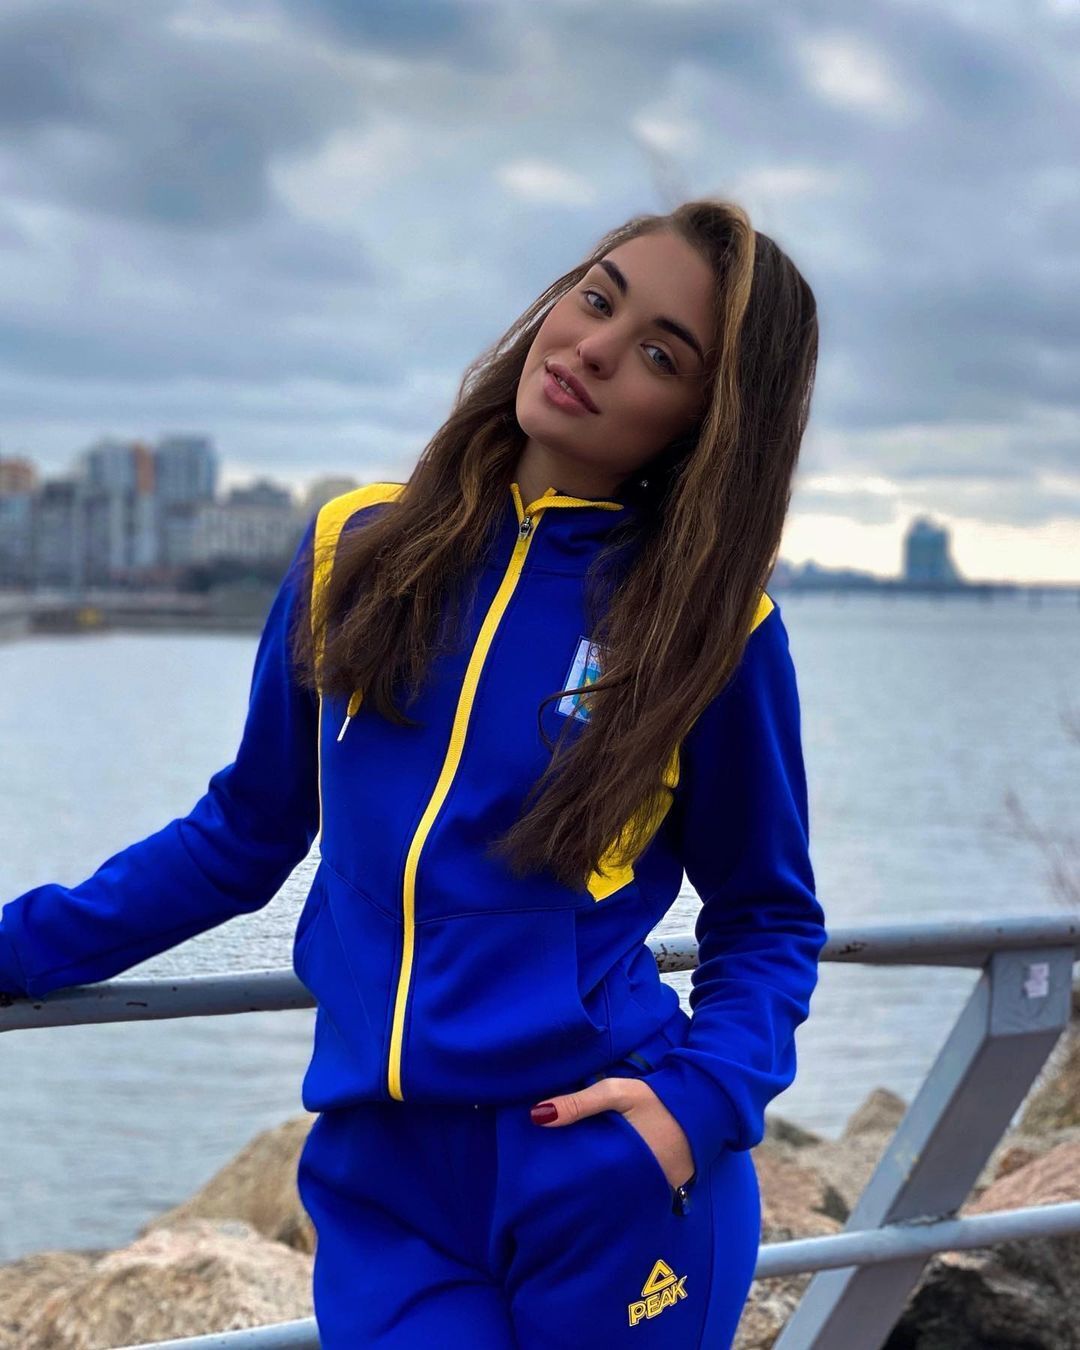 "Полечу в Дубай, а вы будете прятаться в подвалах": чемпионка Украины оскорбила днепрян и получила ответку